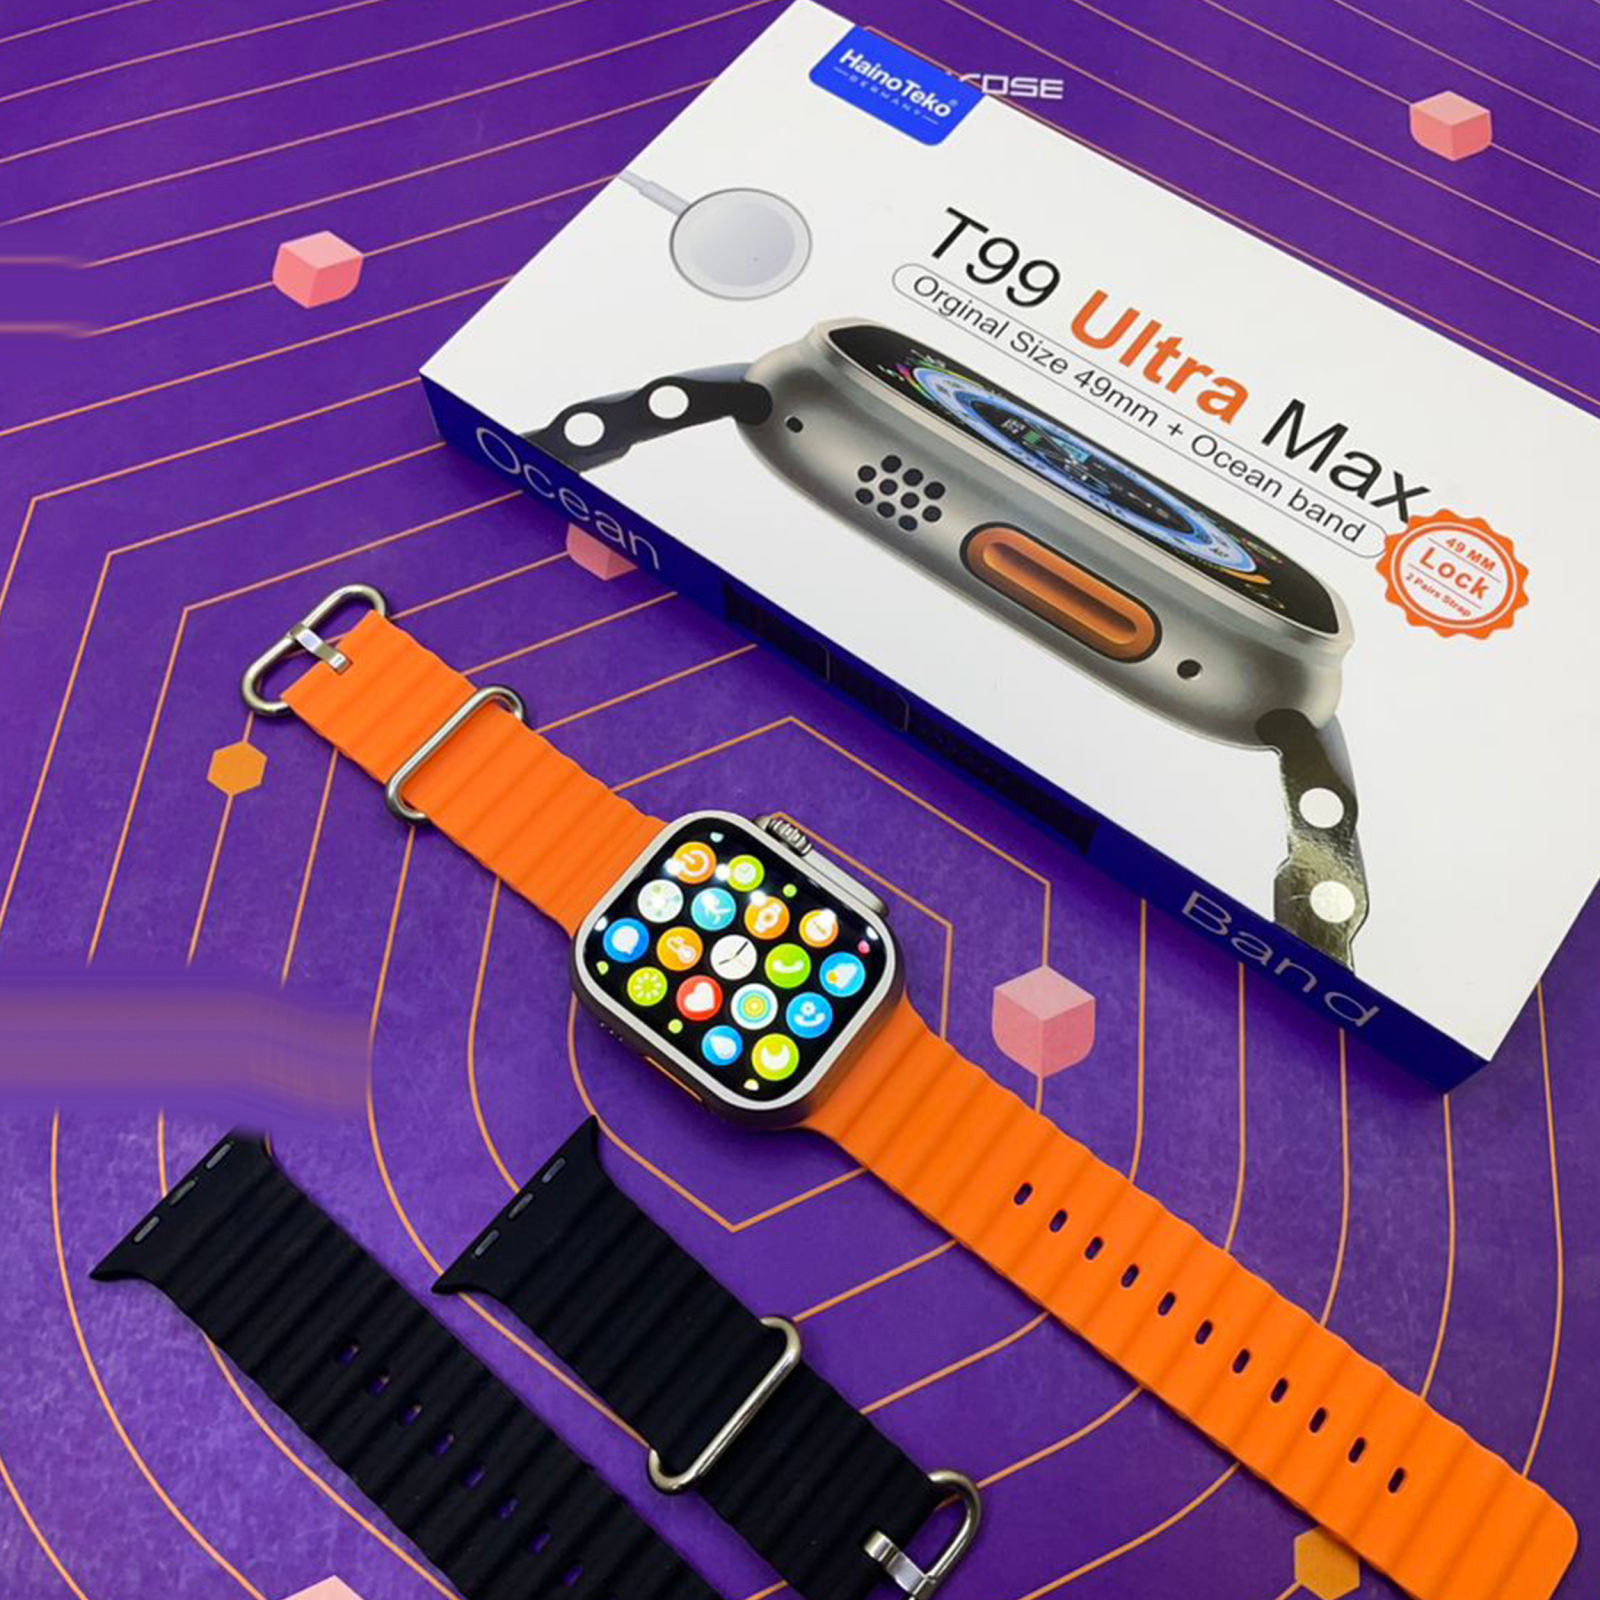 ساعت هوشمند هاینو تکو مدل T99 Ultra Max